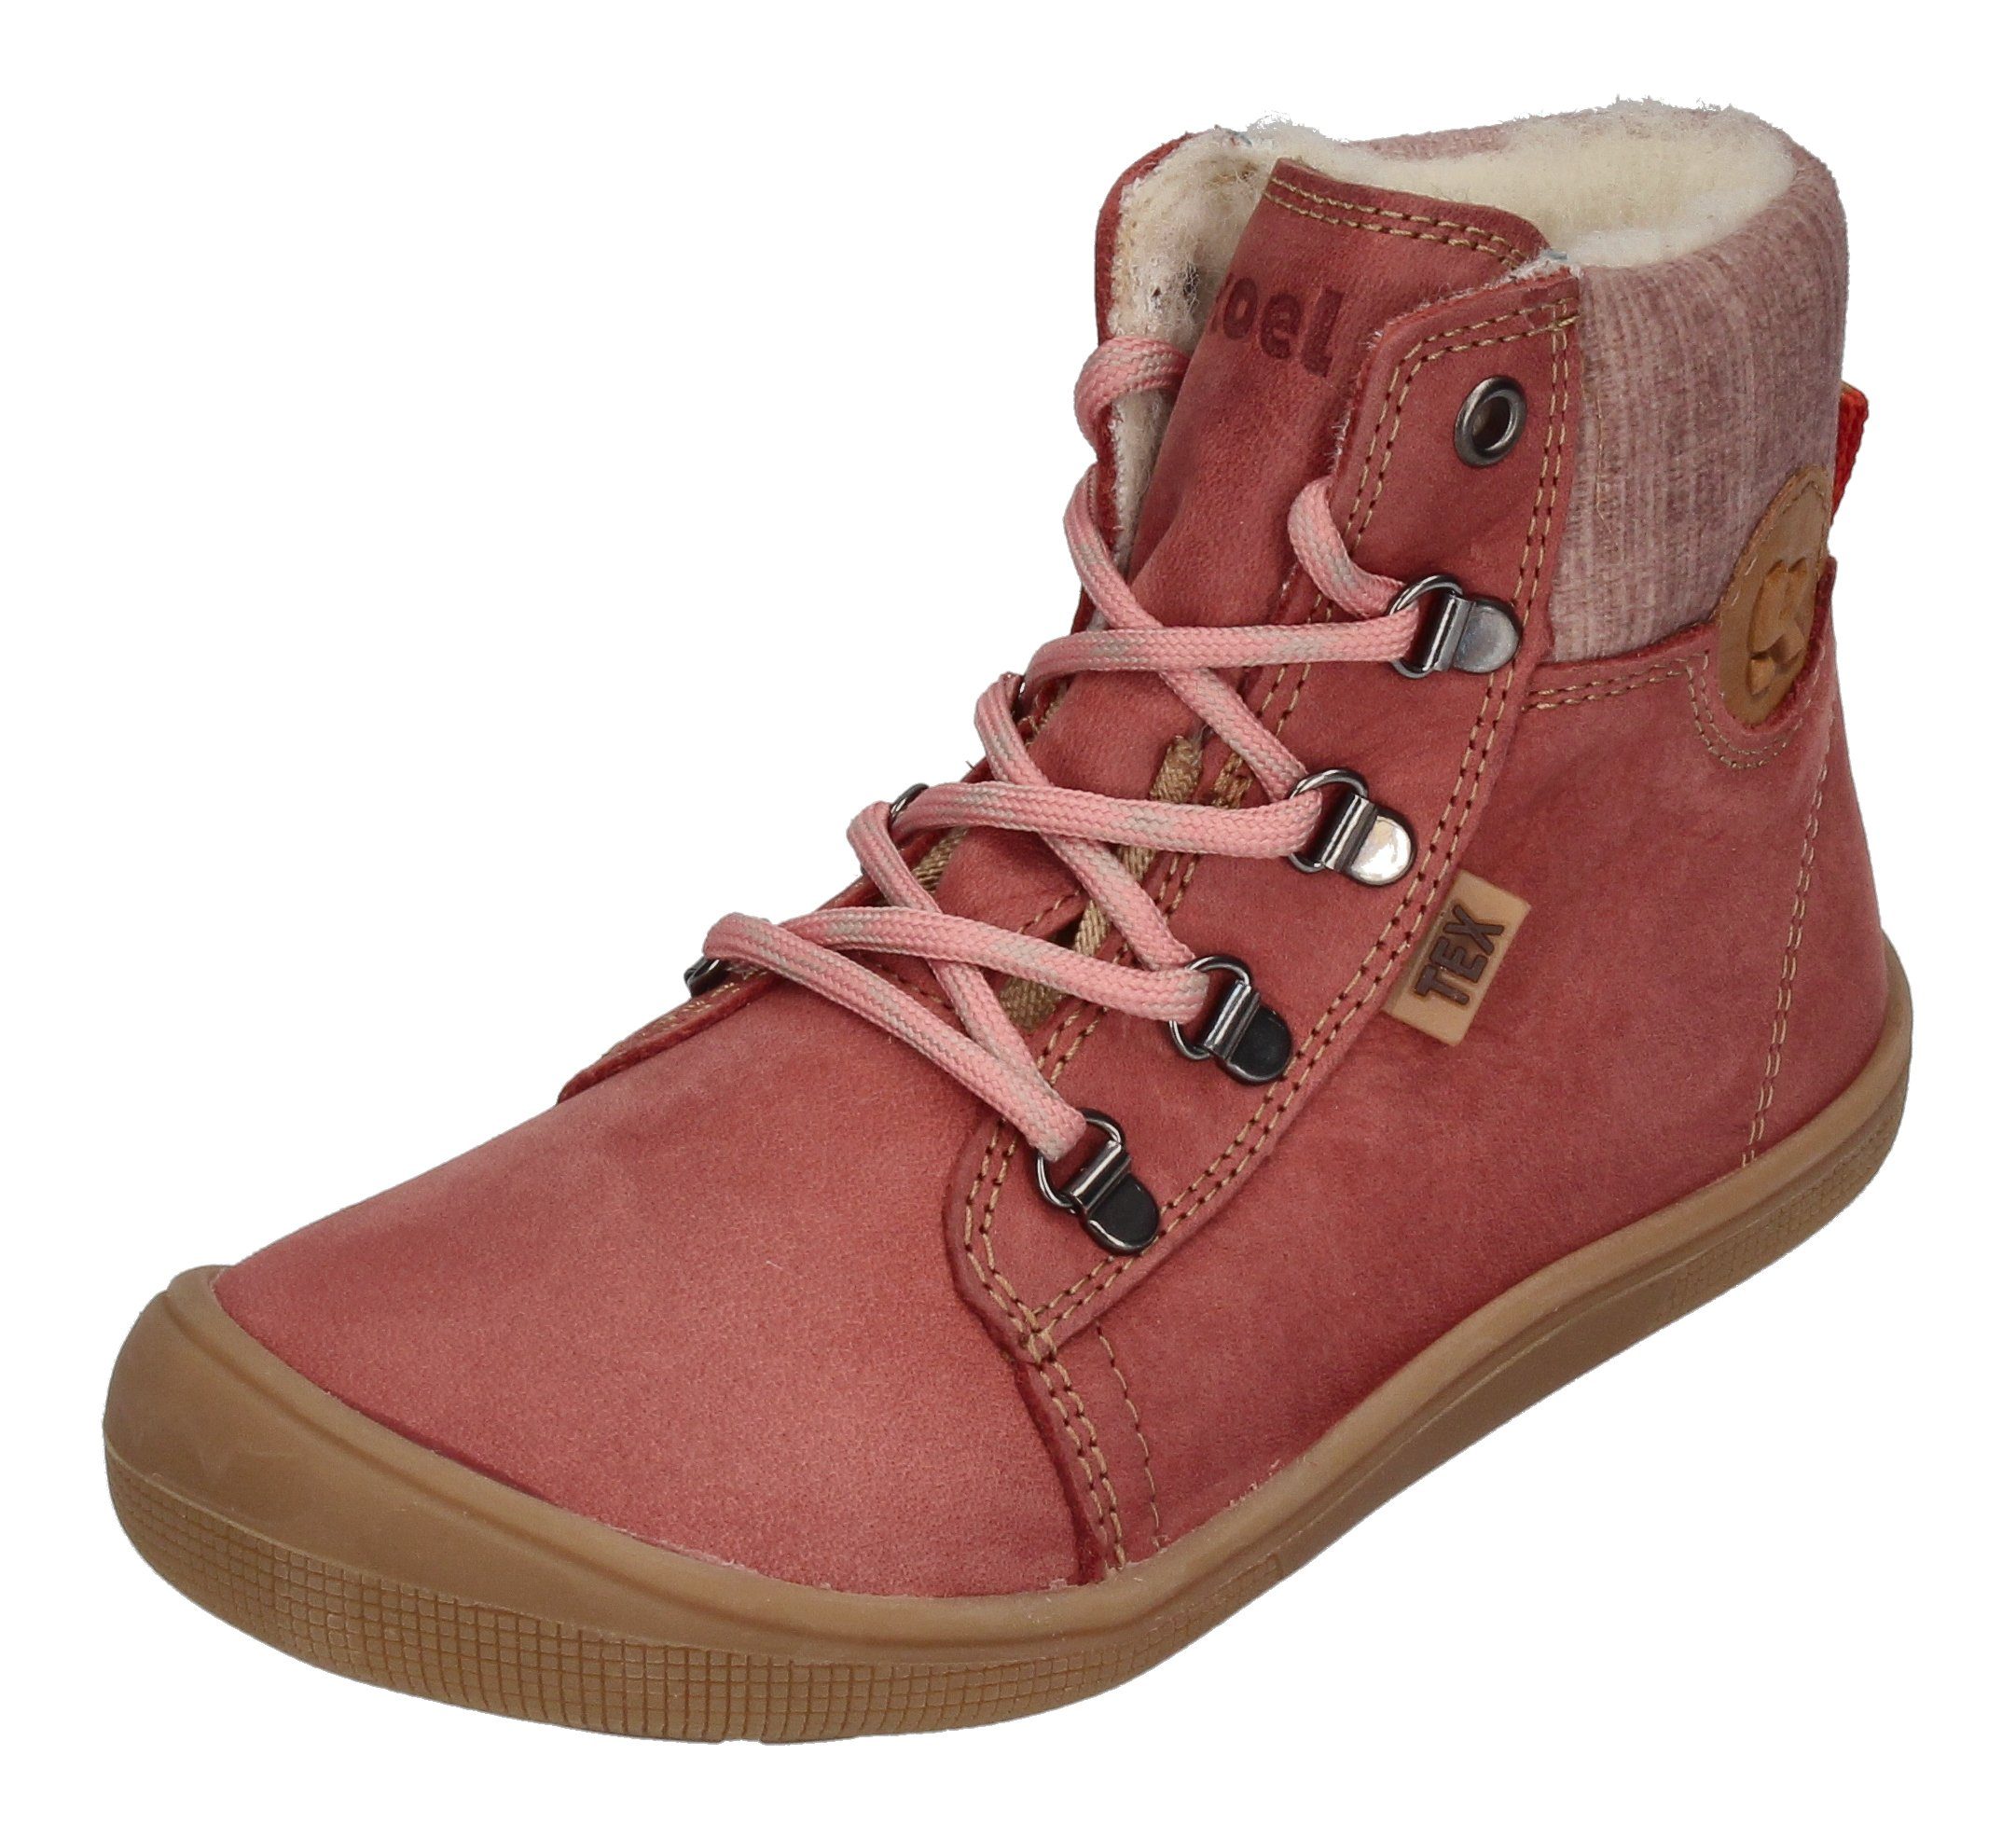 KOEL DEEMER TEX WOOL 07T025.232-600 Winterstiefel Kinder Koel für Old Boots Coole Marke Pink, der